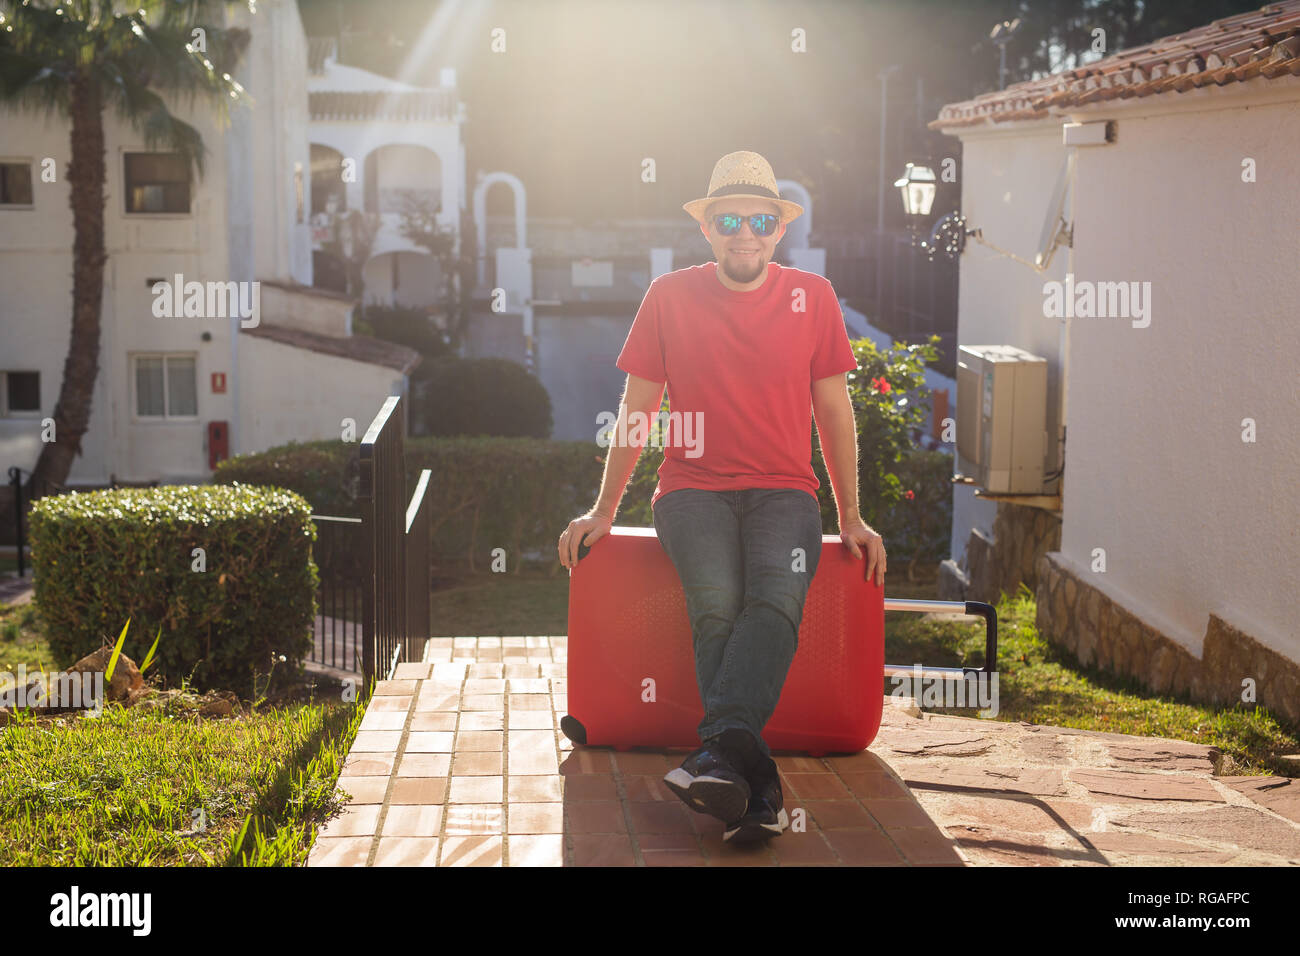 Urlaub, Reisen und Ferien Konzept - stattlicher Mann mit roten Koffer am Hotel angekommen Stockfoto